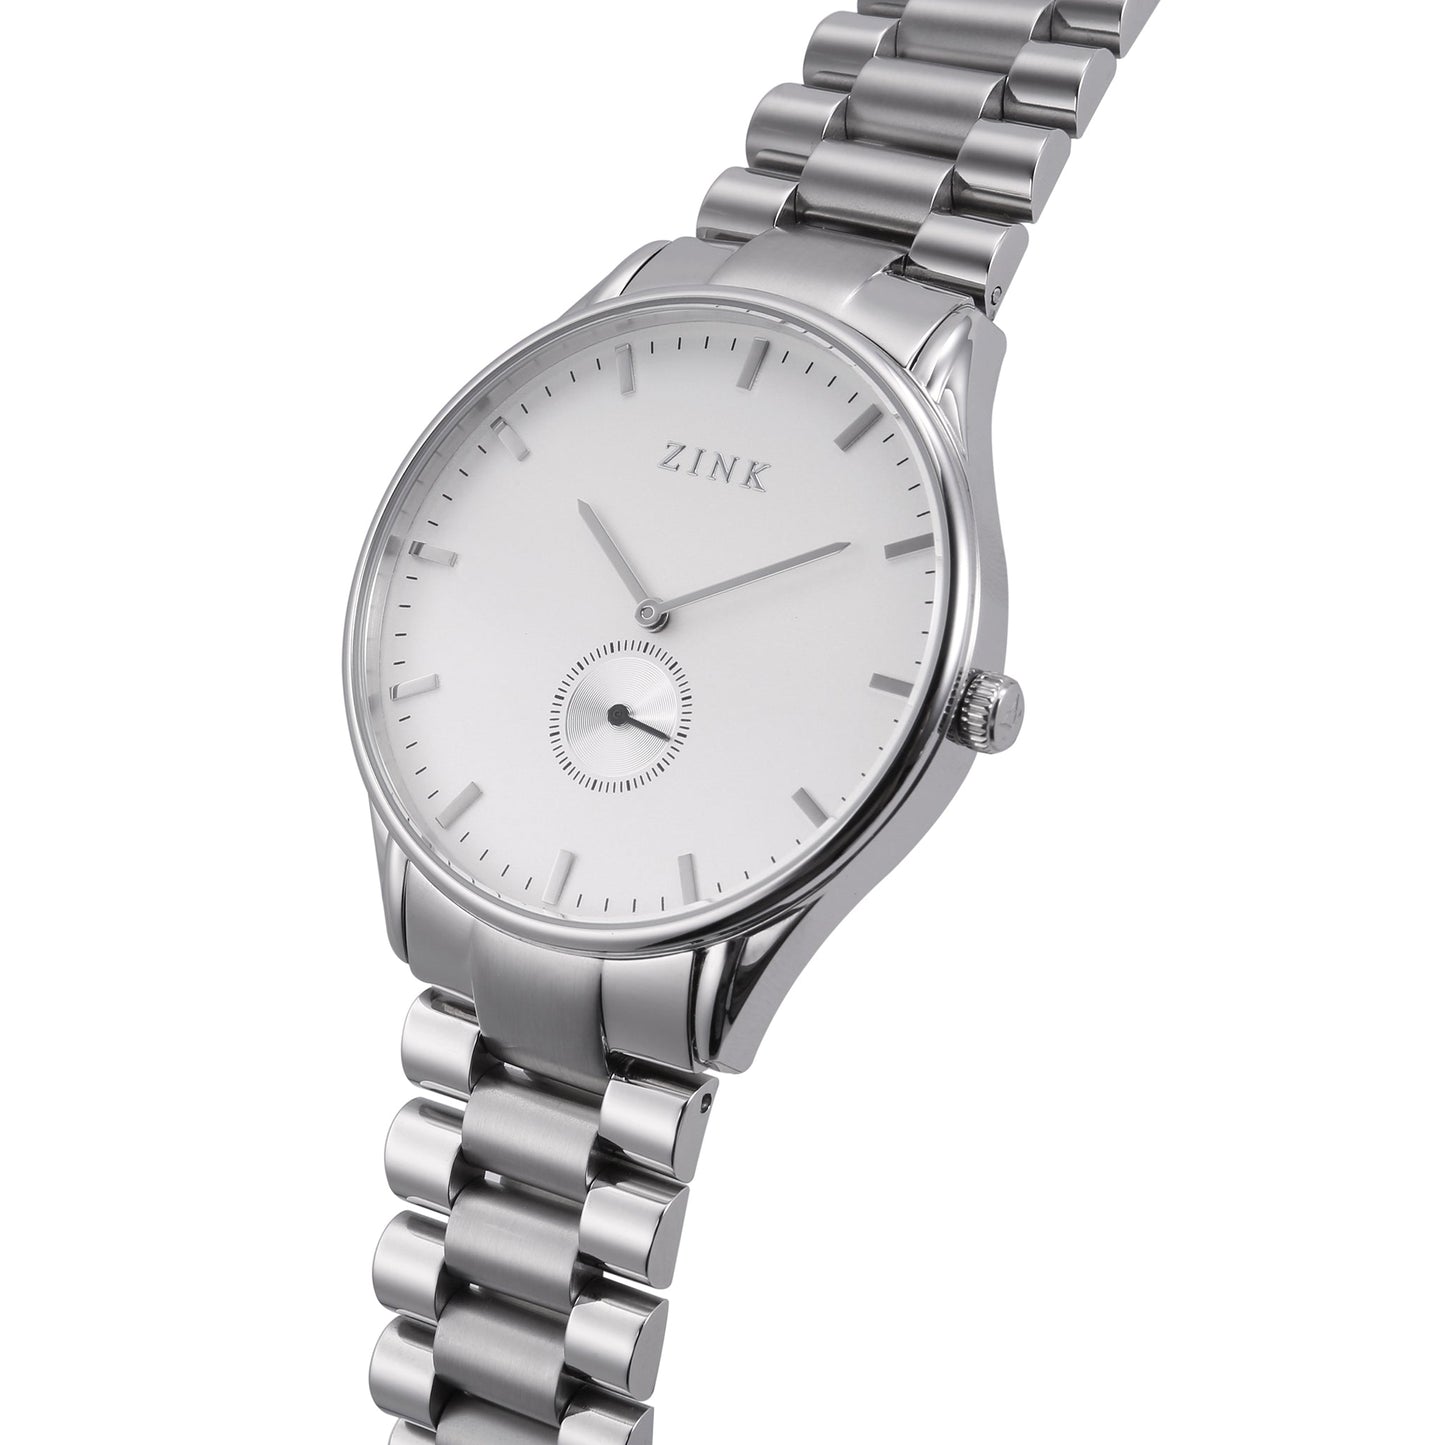 ZK130G5SS-16 ZINK Men's Watch